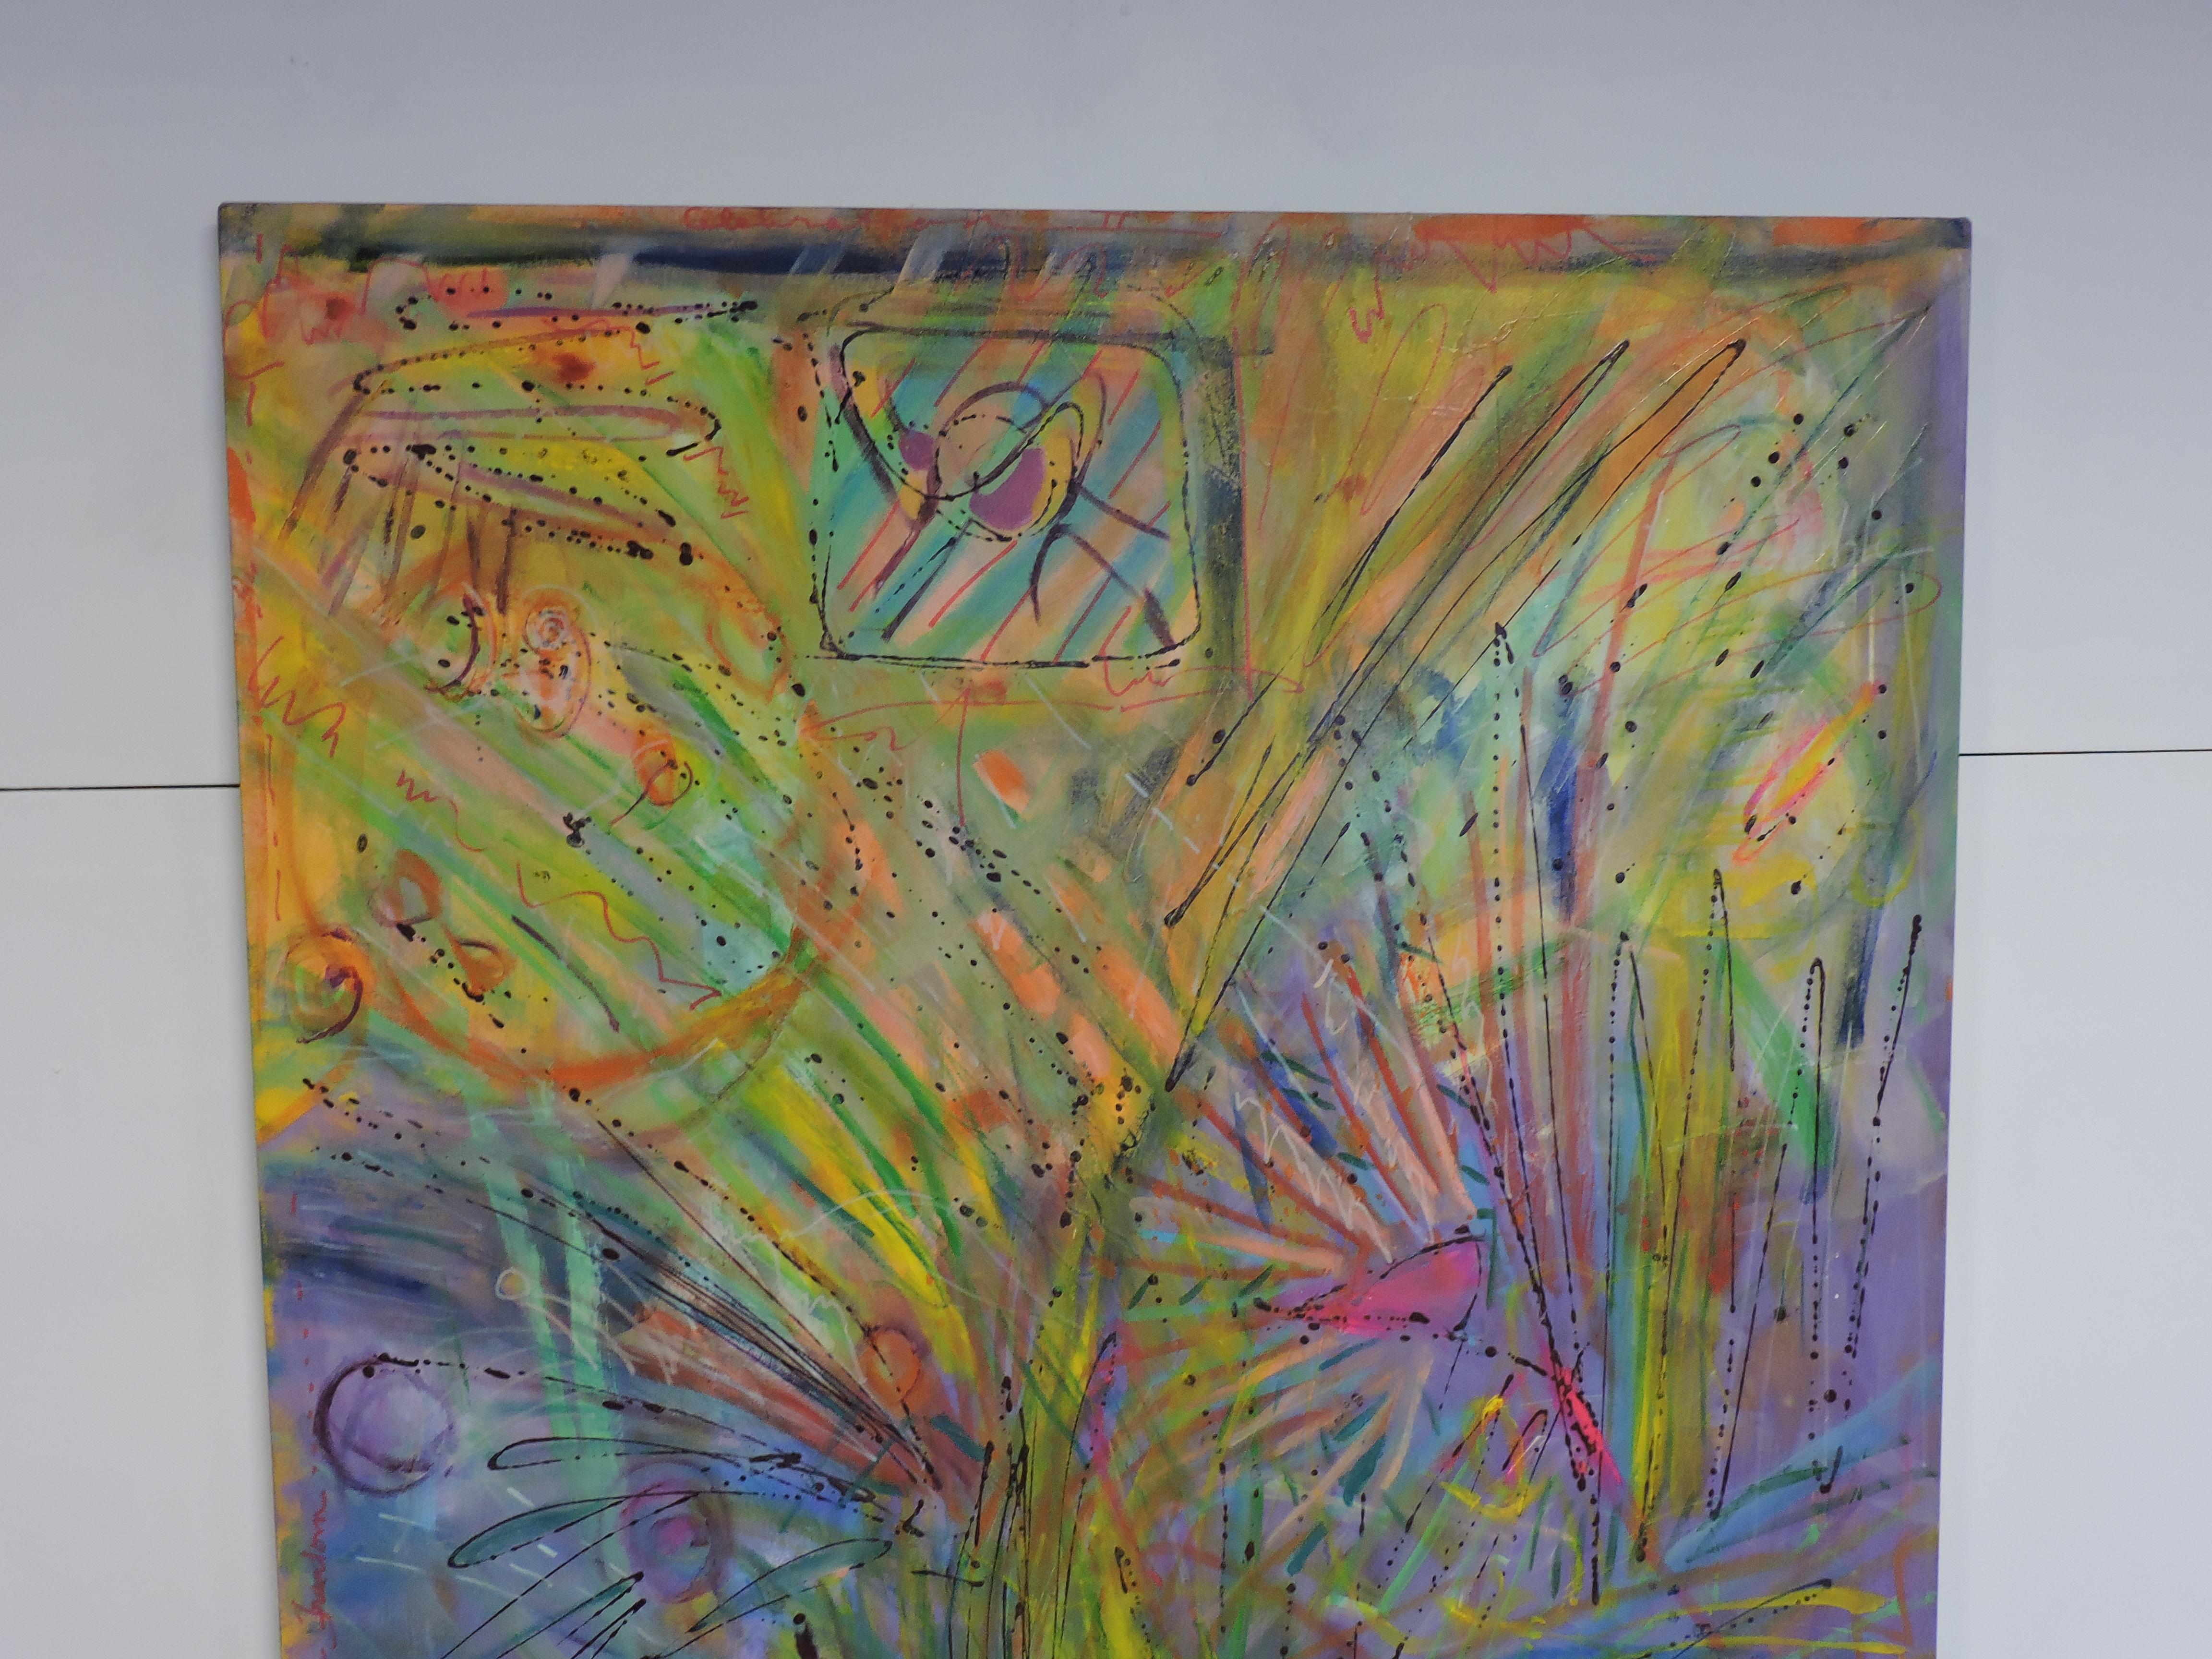 Magnifique peinture abstraite à grande échelle sur toile de la célèbre artiste de Philadelphie, Anne Boysen (1939-2011). Cette œuvre d'art, intitulée Celebration II, est une explosion de couleurs joyeuses. Sans cadre, mais avec un bord peint. Signé